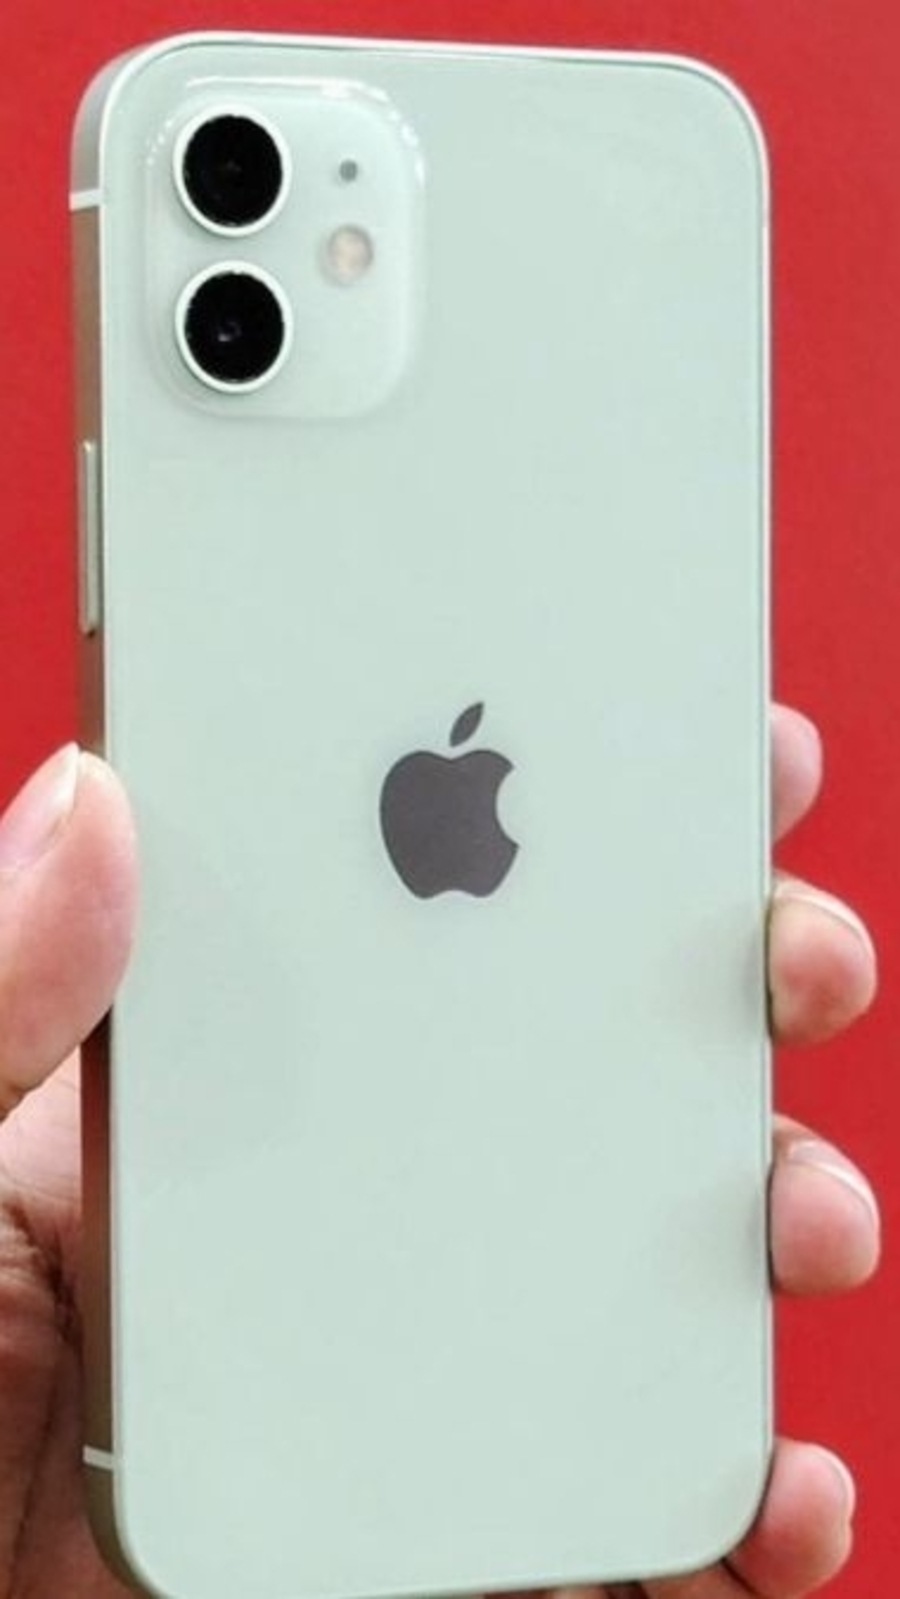 iPhone 12: Bạn đã sẵn sàng tiếp tục trải nghiệm một sản phẩm tuyệt vời mới từ Apple? Với iPhone 12, bạn sẽ được chứng kiến sự thay đổi lớn về thiết kế, tính năng và cách thức sạc pin. Nó sẽ trở thành một sự lựa chọn tuyệt vời cho mọi công việc và sở thích của bạn. Xem ngay hình ảnh để khám phá chiếc điện thoại này!